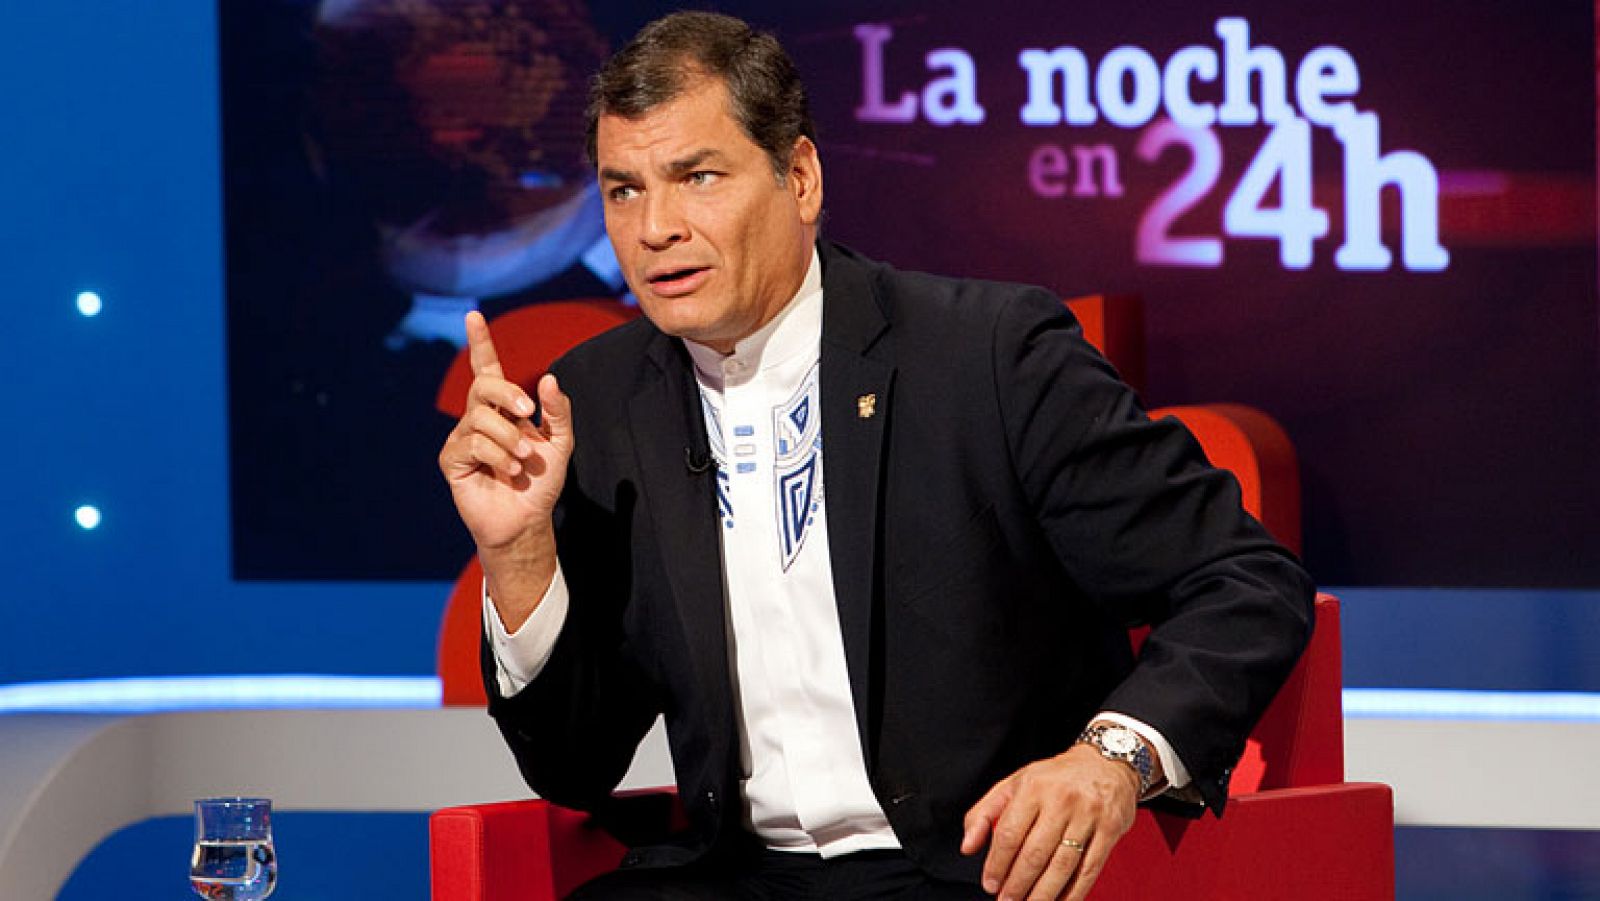 La noche en 24h: El presidente de Ecuador, Rafael Correa: "La ley hipotecaria es inmoral" | RTVE Play